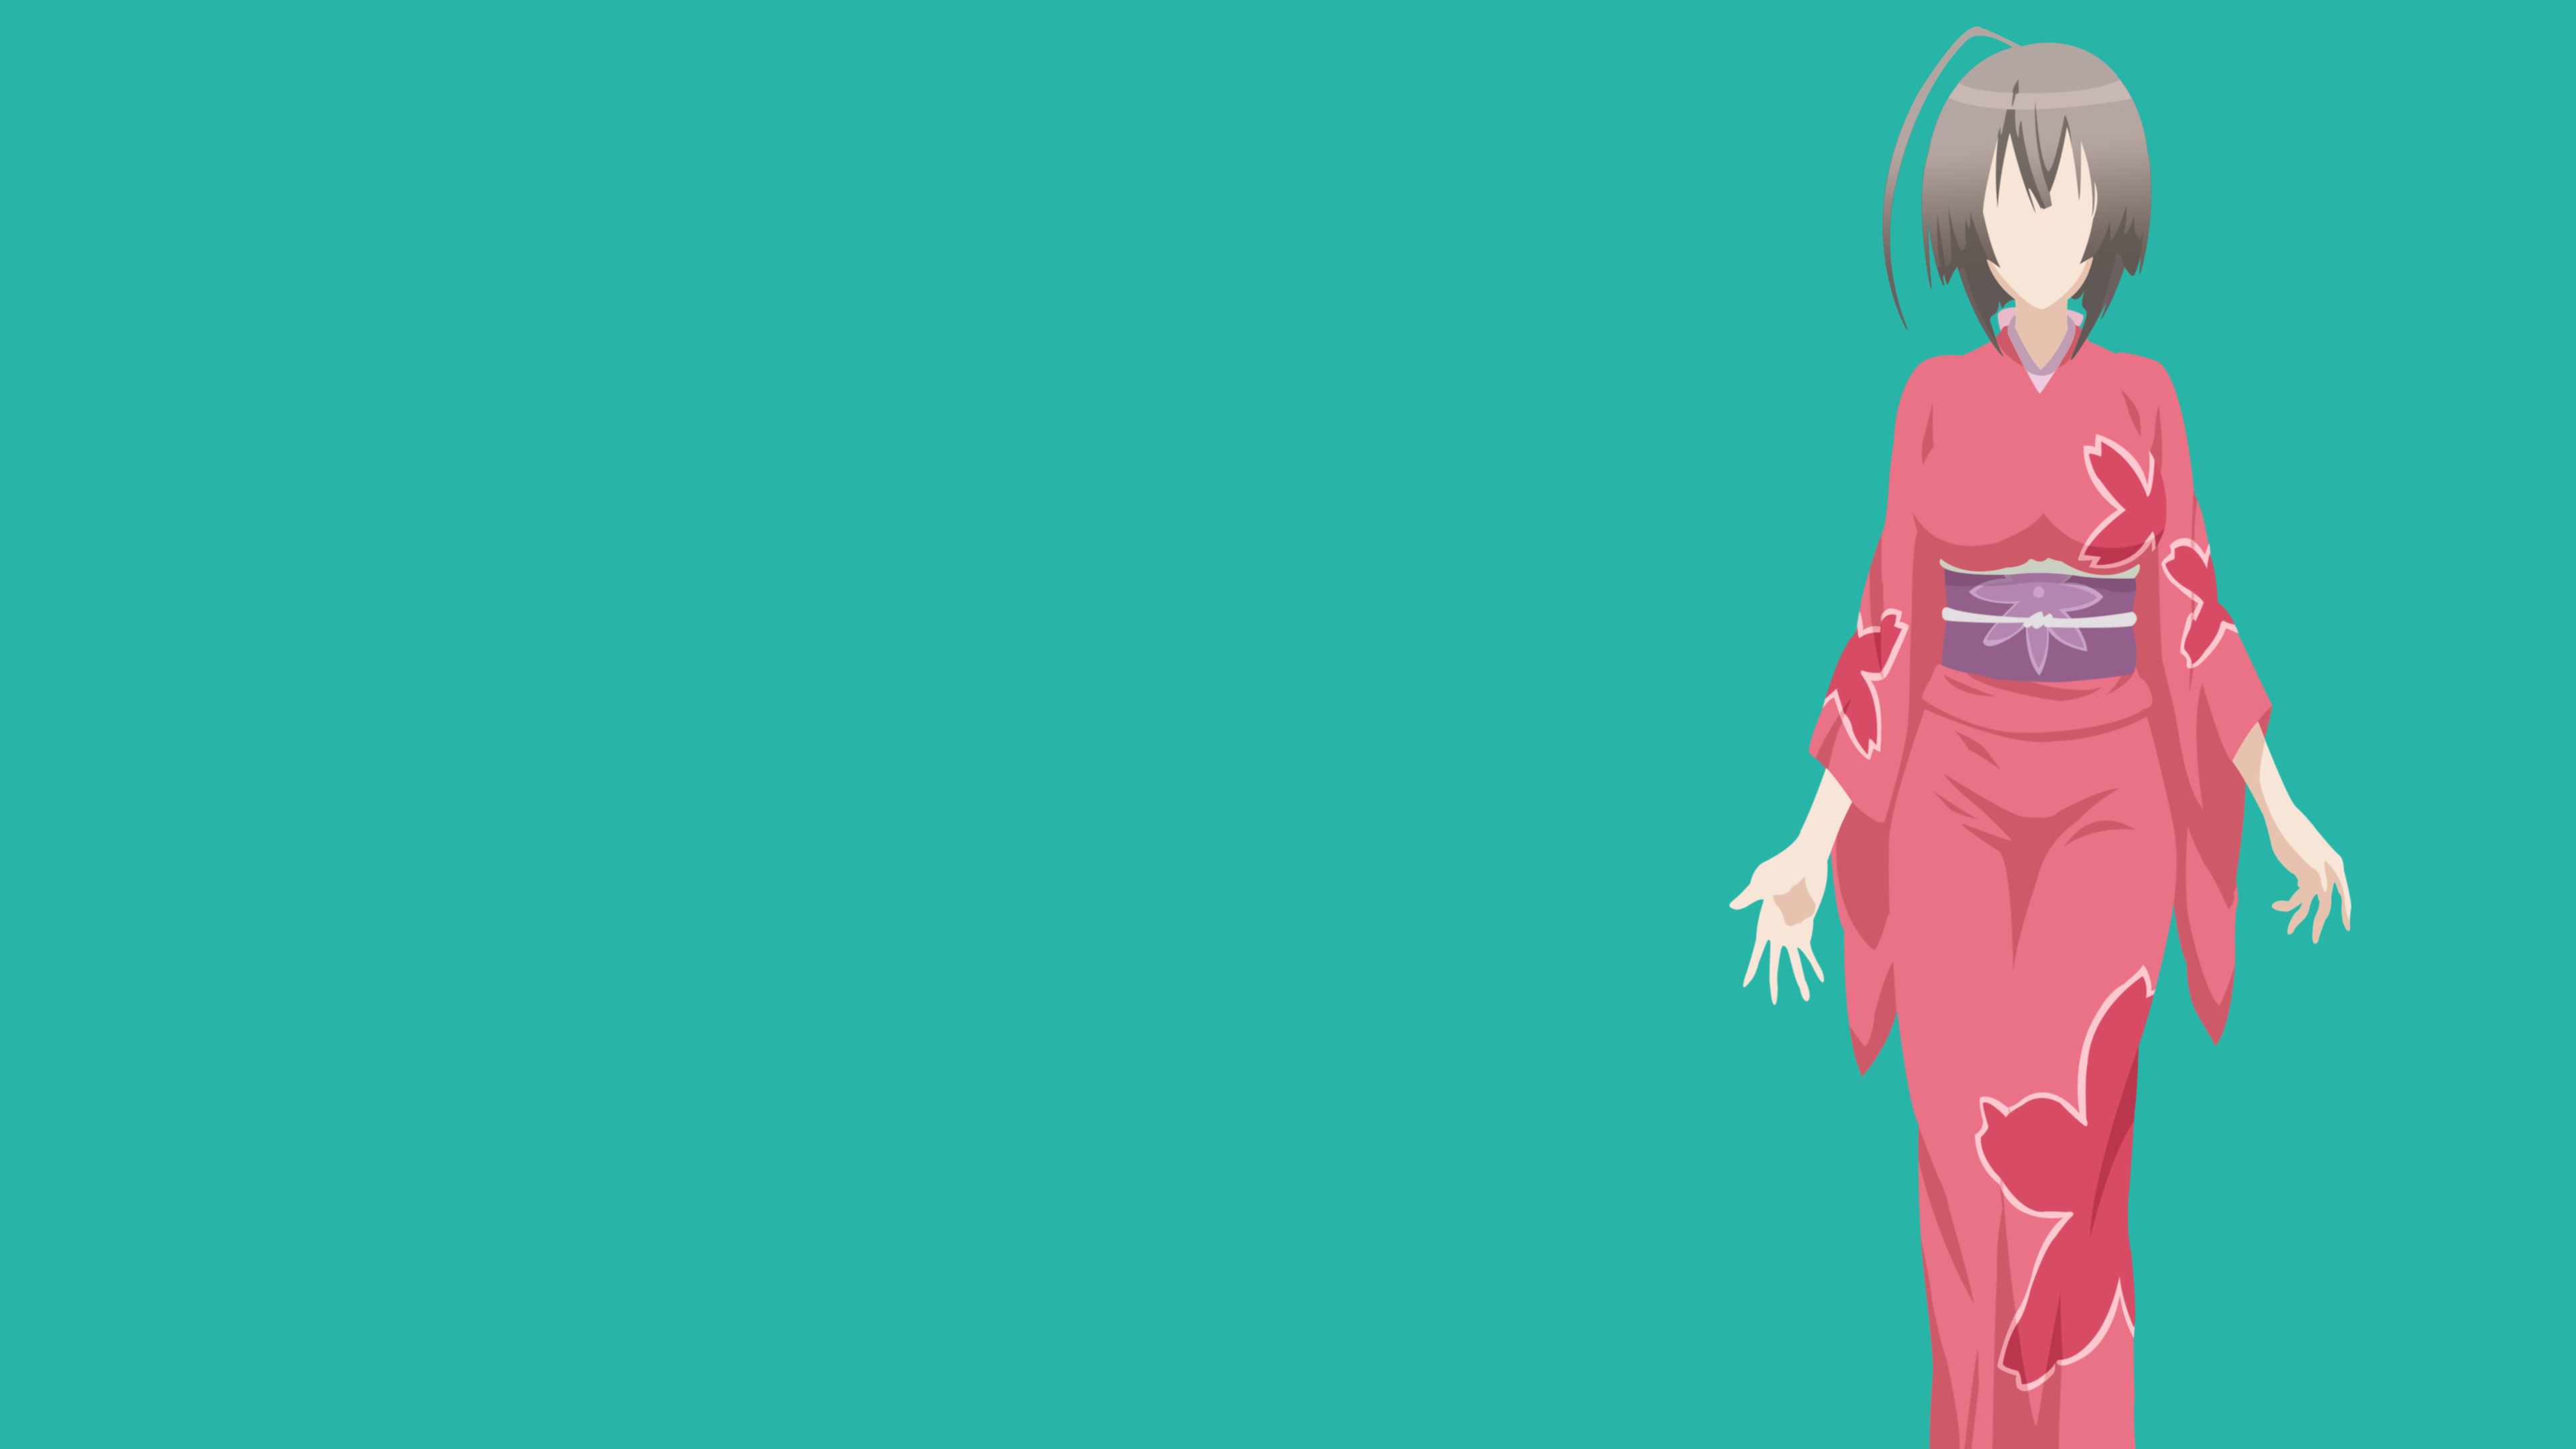 Anime 3840x2160 anime girls Sekirei Musubi turquoise turquoise background